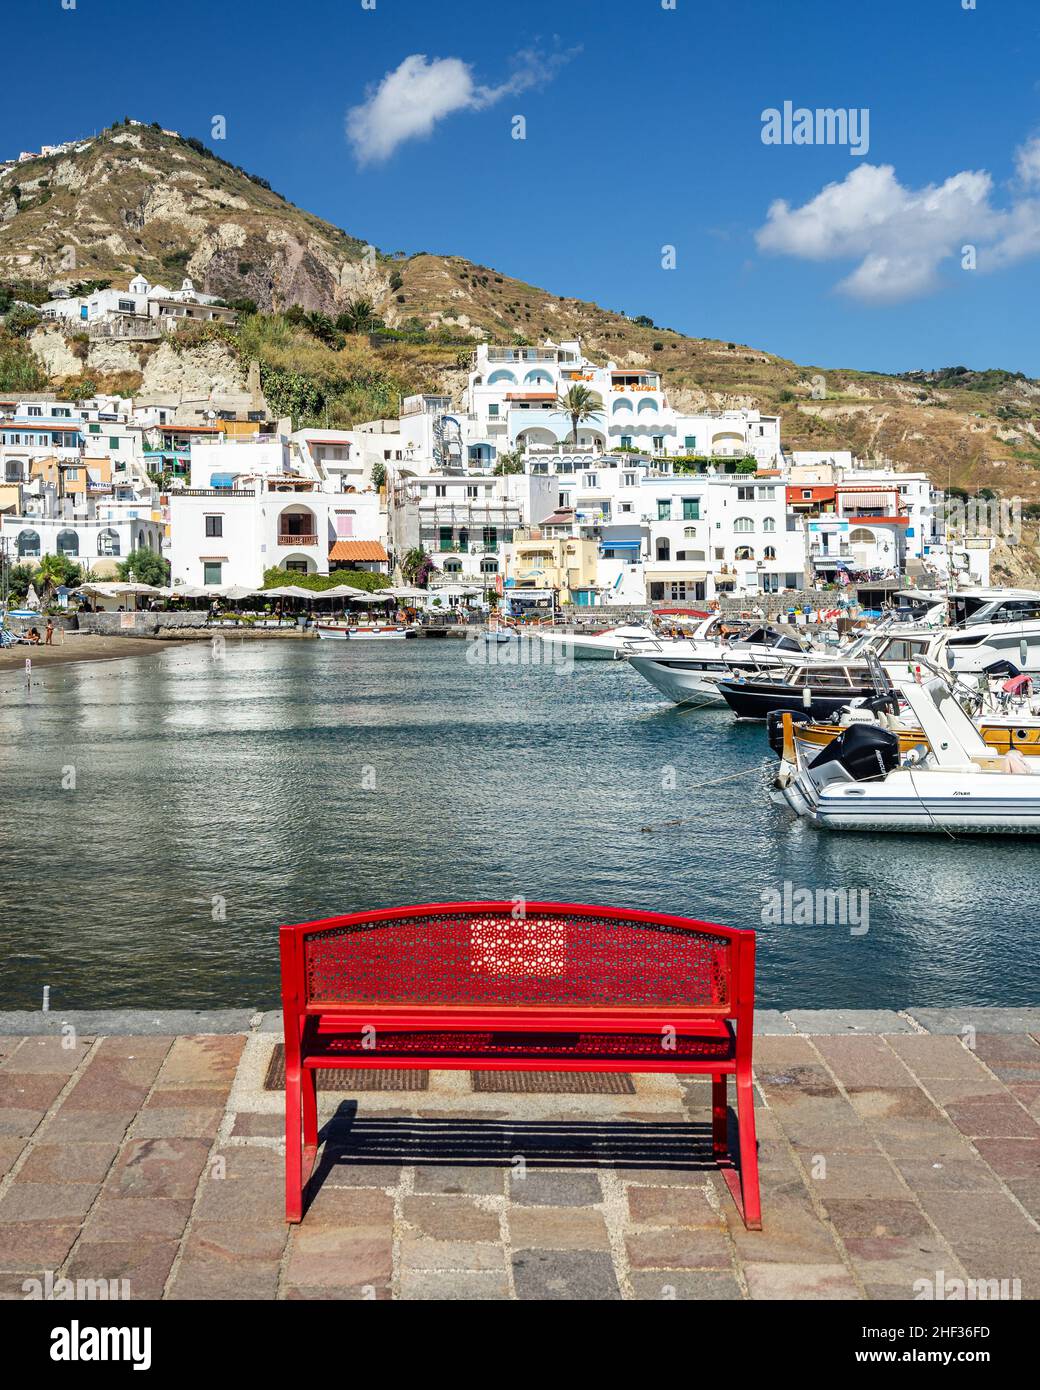 Un banc rouge coloré face au port de Sant’Angelo d’Ischia, en Italie Banque D'Images